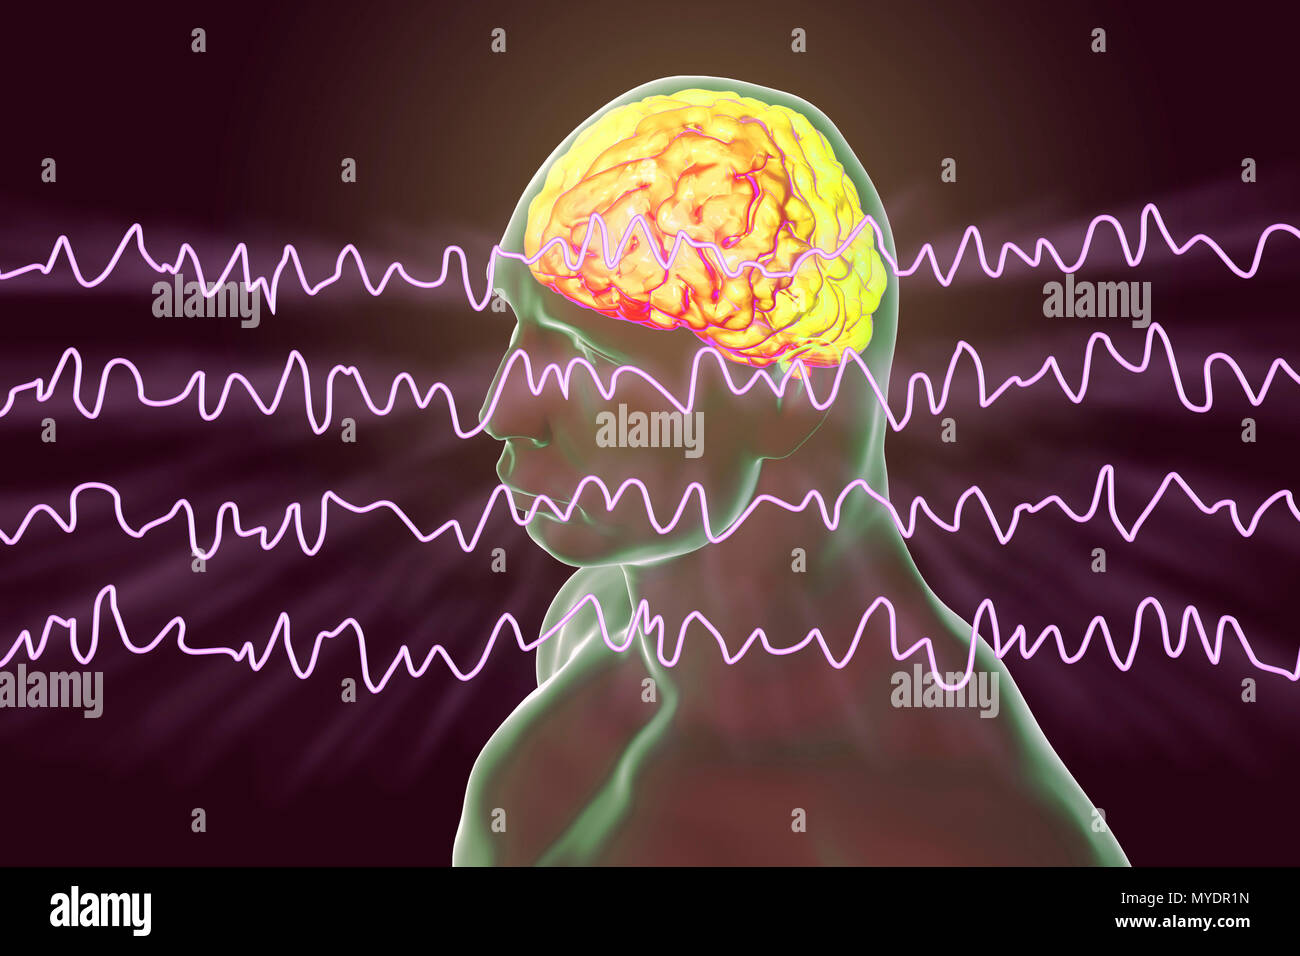 Il cervello e le onde cerebrali in stato sveglio durante il riposo, illustrazione del computer. Un'elettroencefalogramma (EEG) misura l'attività elettrica del cervello utilizzando elettrodi collegati al cuoio capelluto. Vari disturbi possono essere diagnosticati analizzando i risultati EEG. Foto Stock